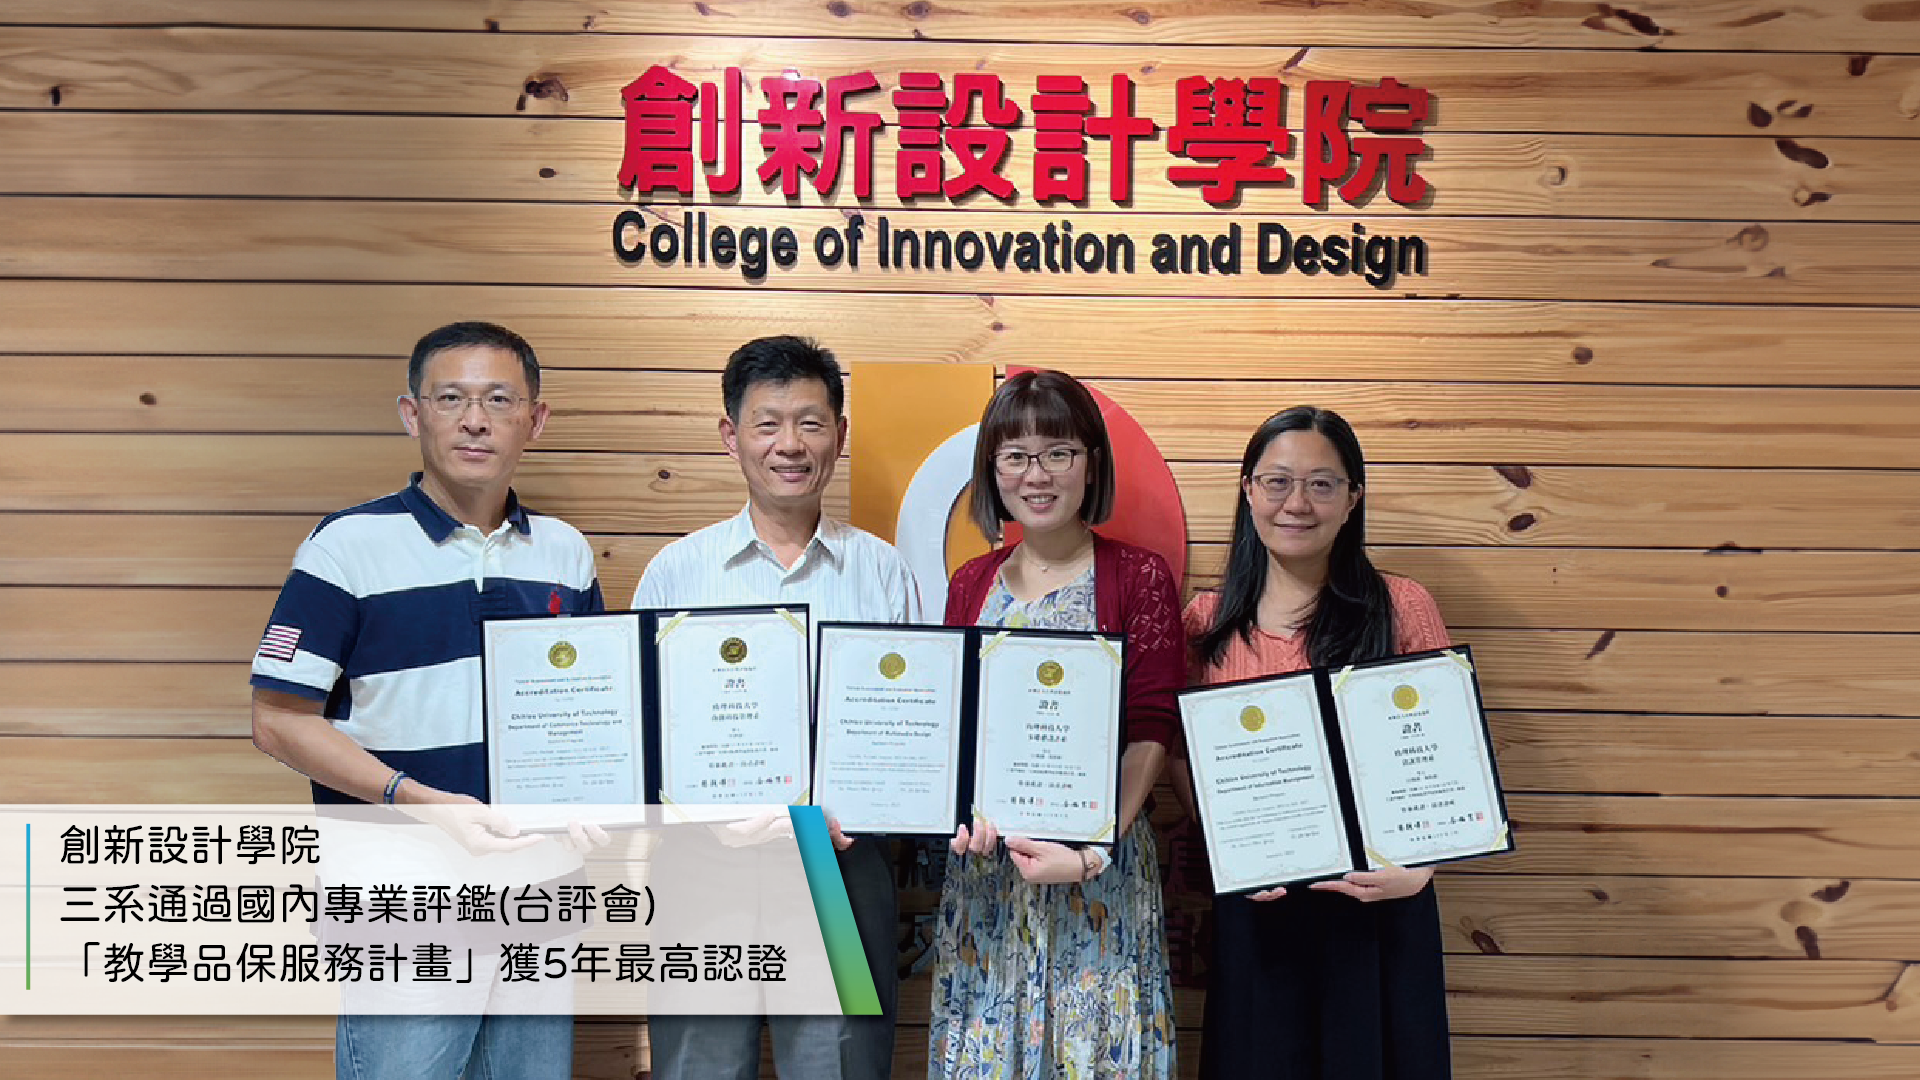 創新設計學院三系通過國內專業評鑑(台評會) 「教學品保服務計畫」獲5年最高認證